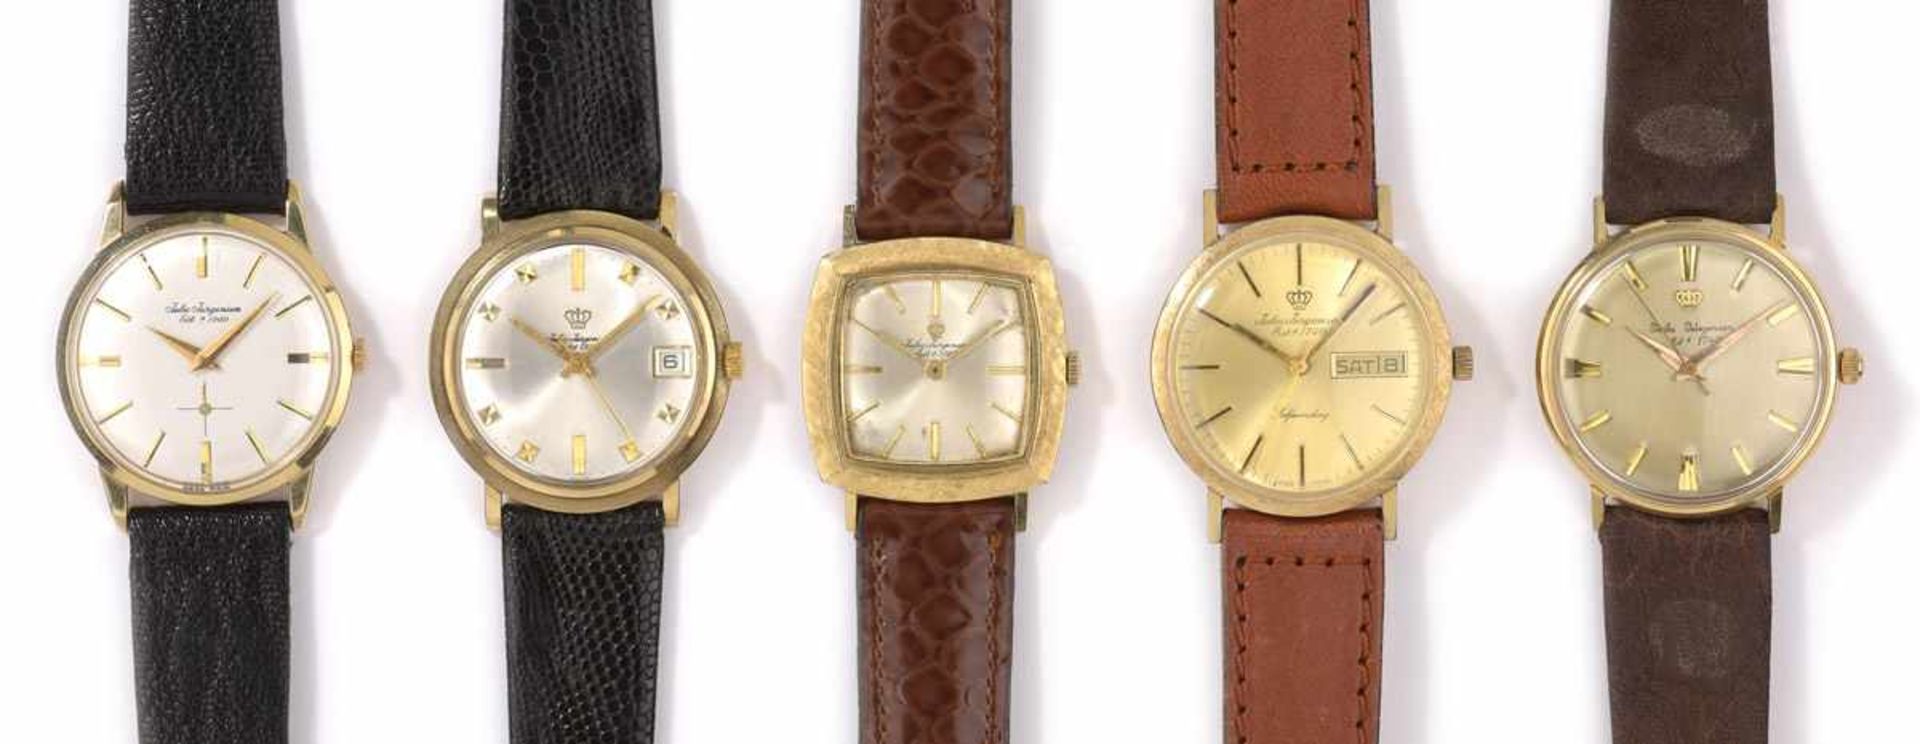 Sammlung von fünf Herrenarmbanduhren der Marke Jules Jürgensen